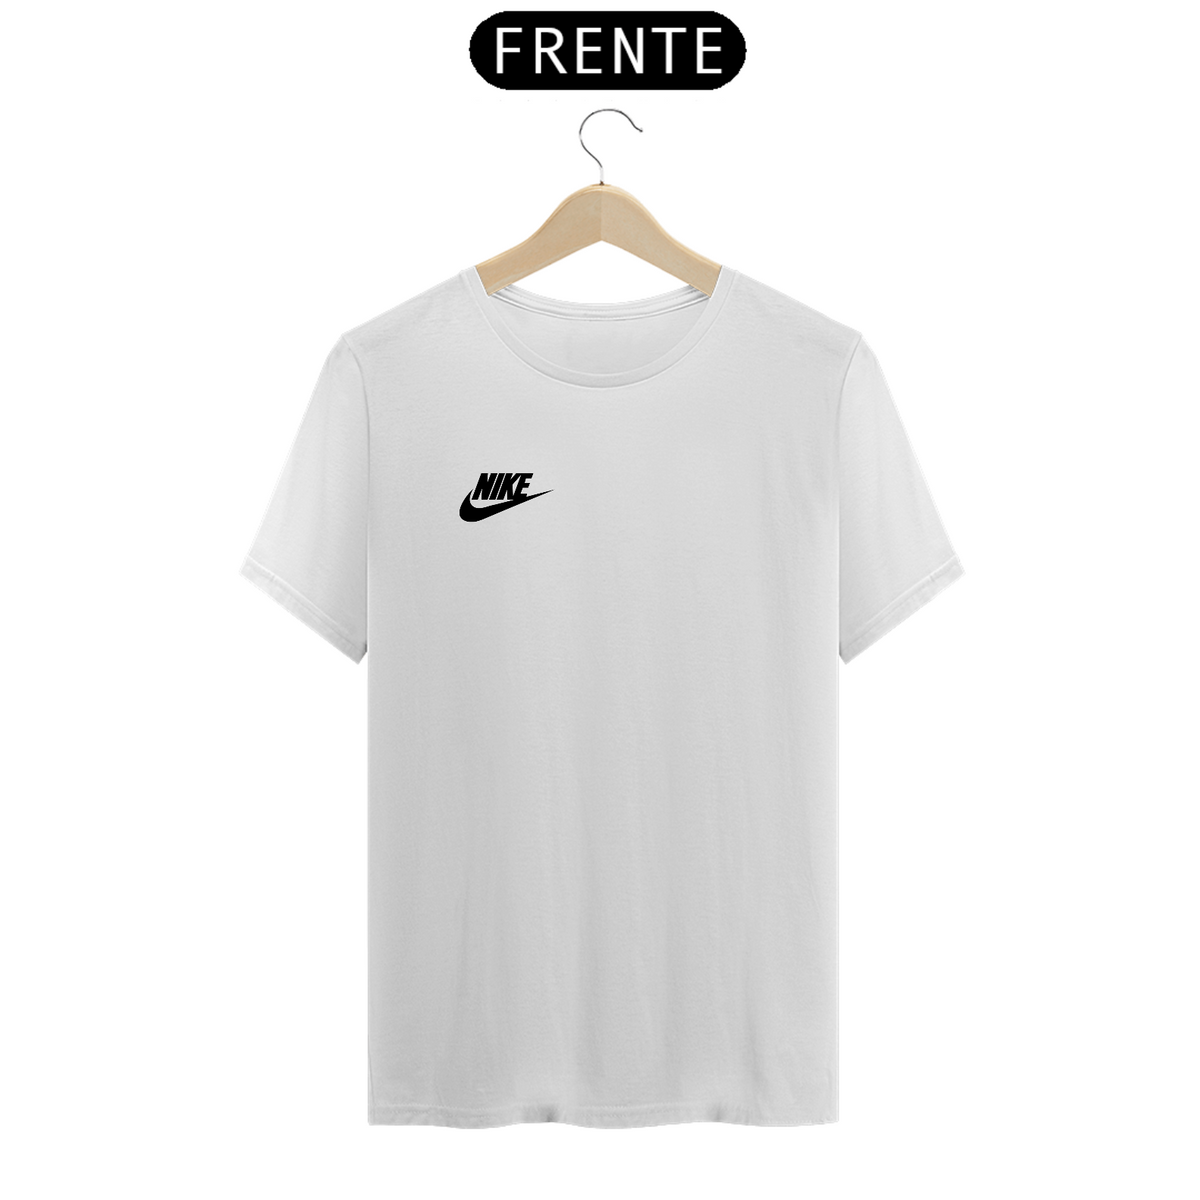 Nome do produto: Camisa branca Nike